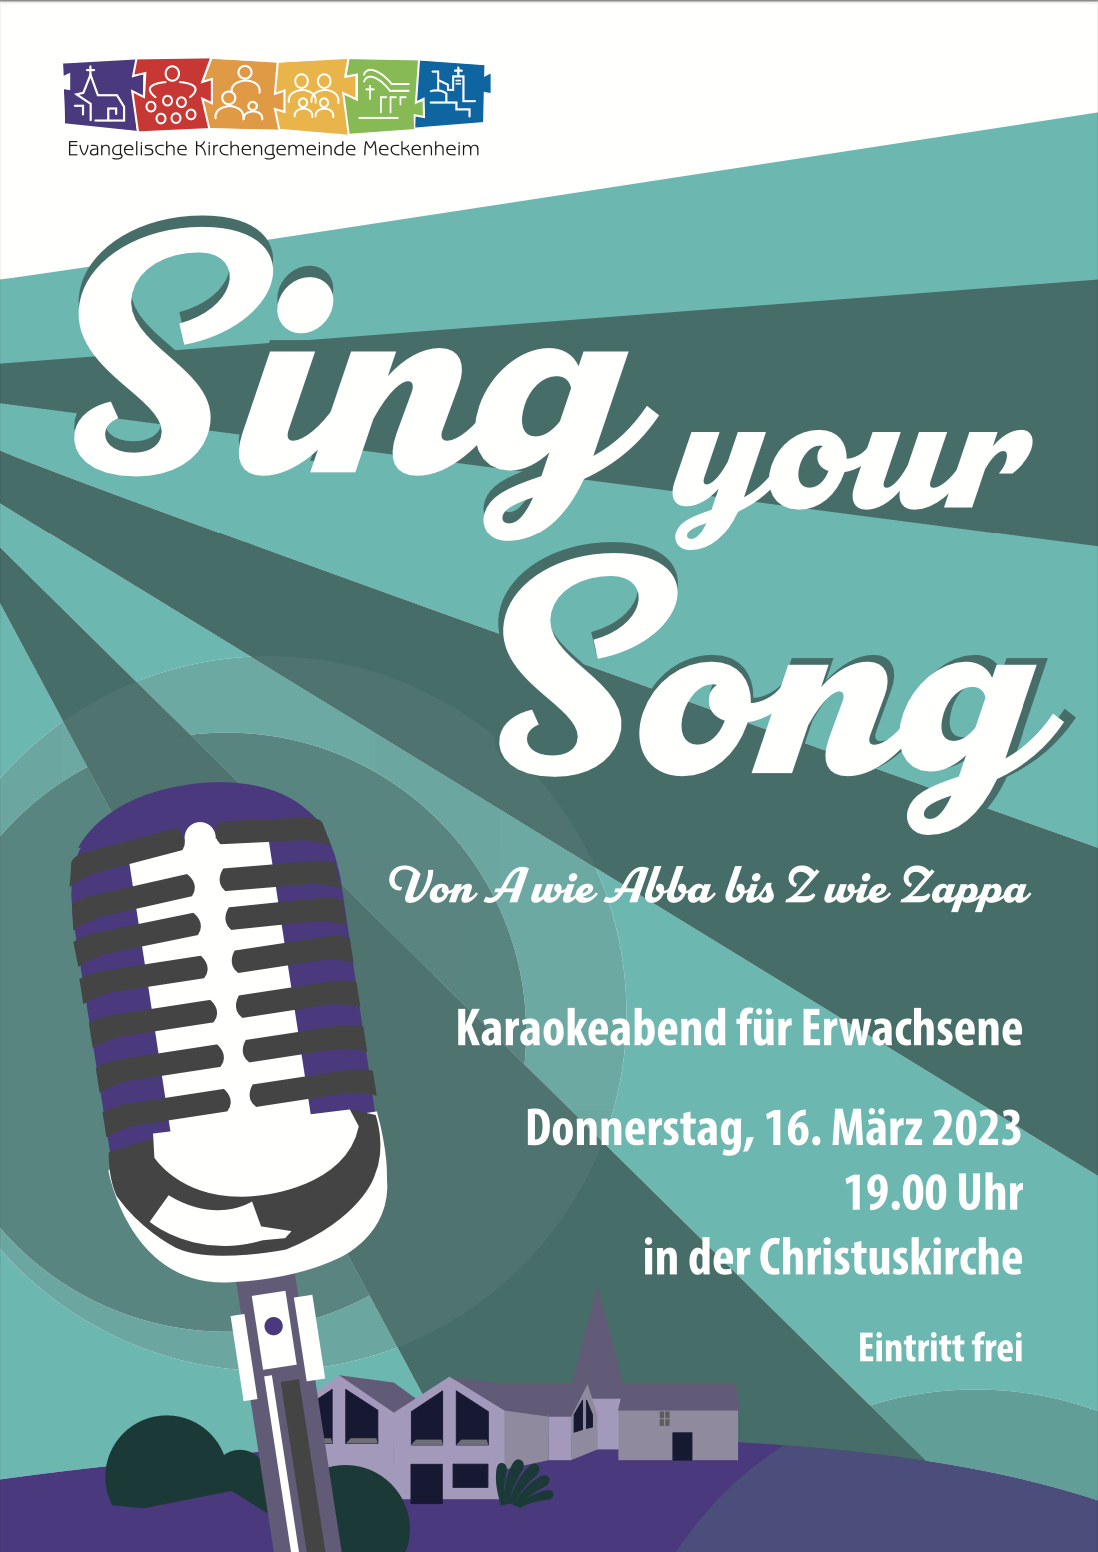 Gestalteter Flyer zum Karaoke Singen am 16.03.23 um 19 Uhr in der Christuskirche. Von A wie Abba bis Z wie Zappa. Der Eintritt ist frei.